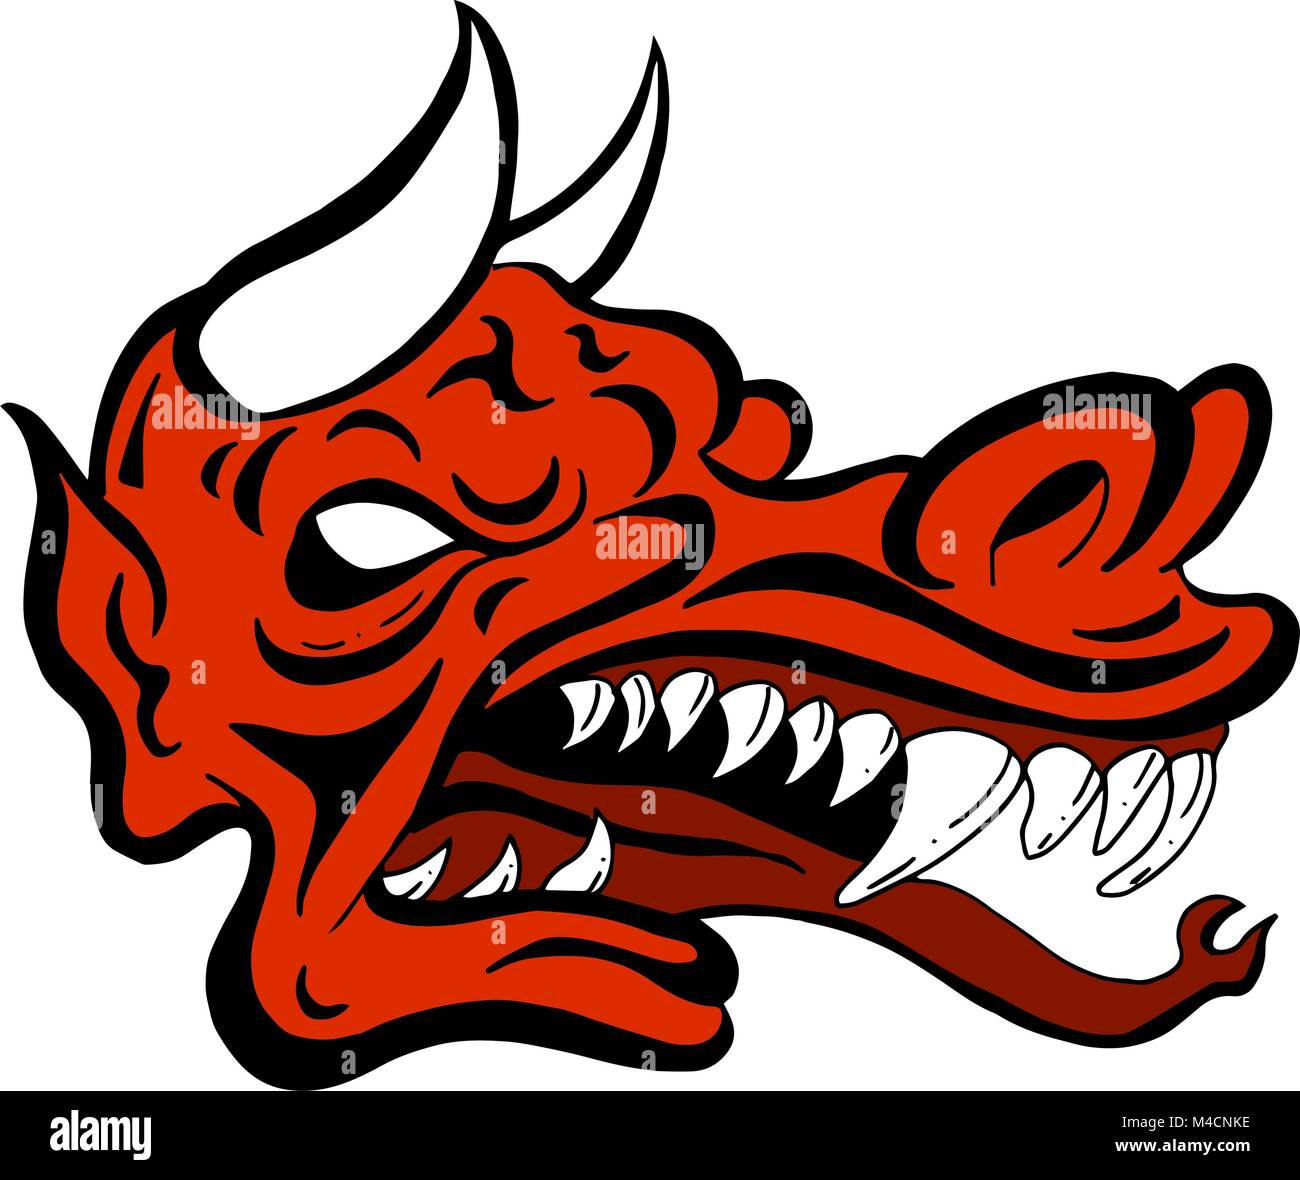 An image of a demon dragon face creature. Stock Vector